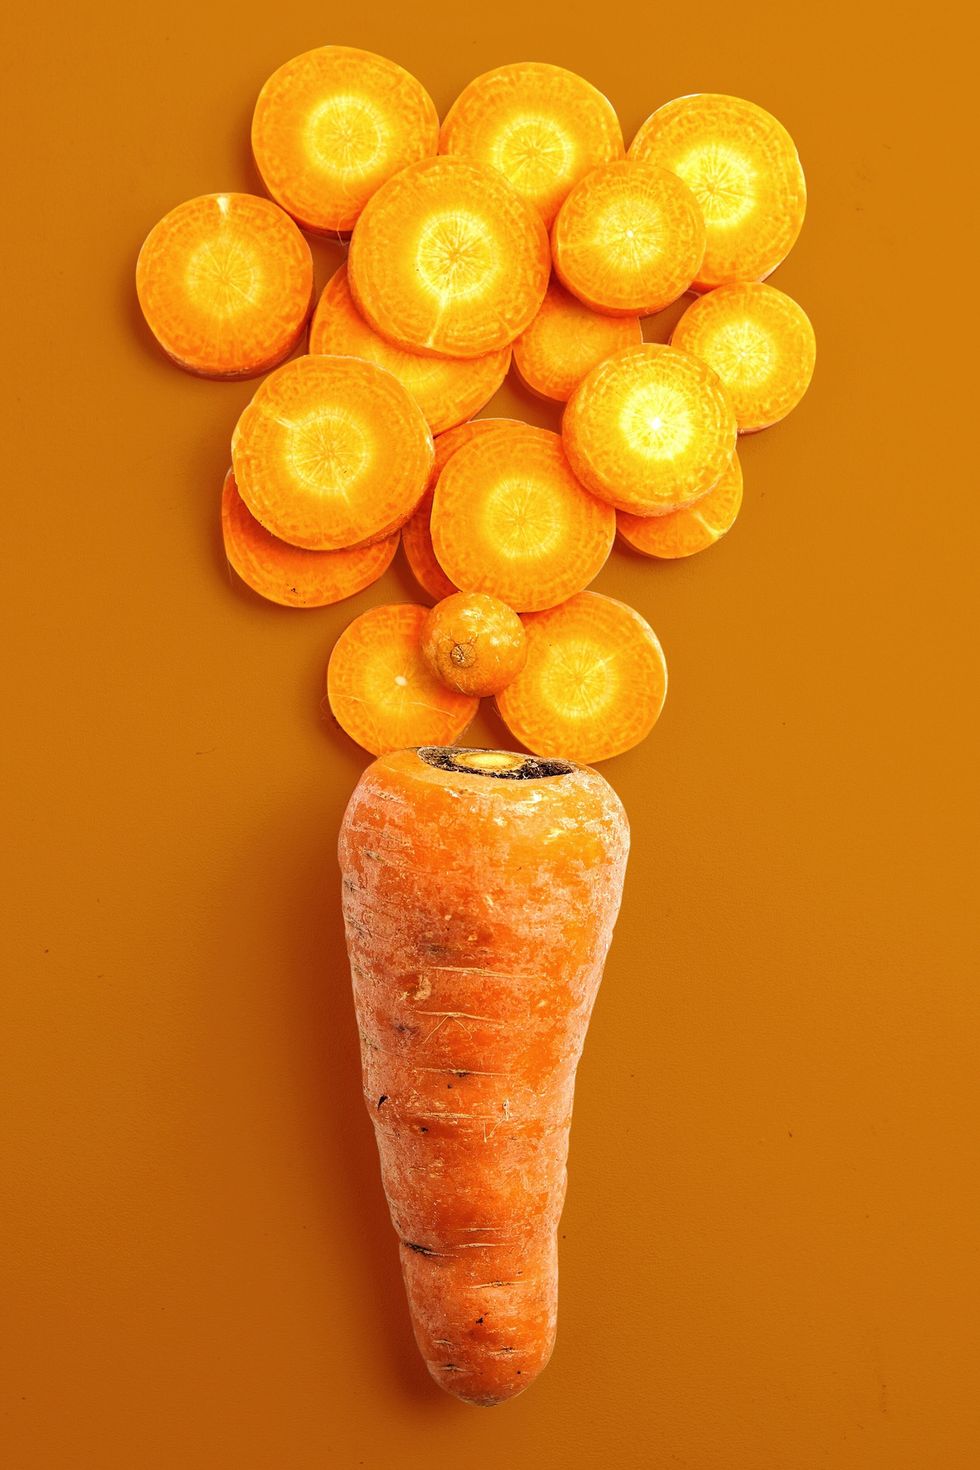 胡蘿蔔 - 維生素A食物